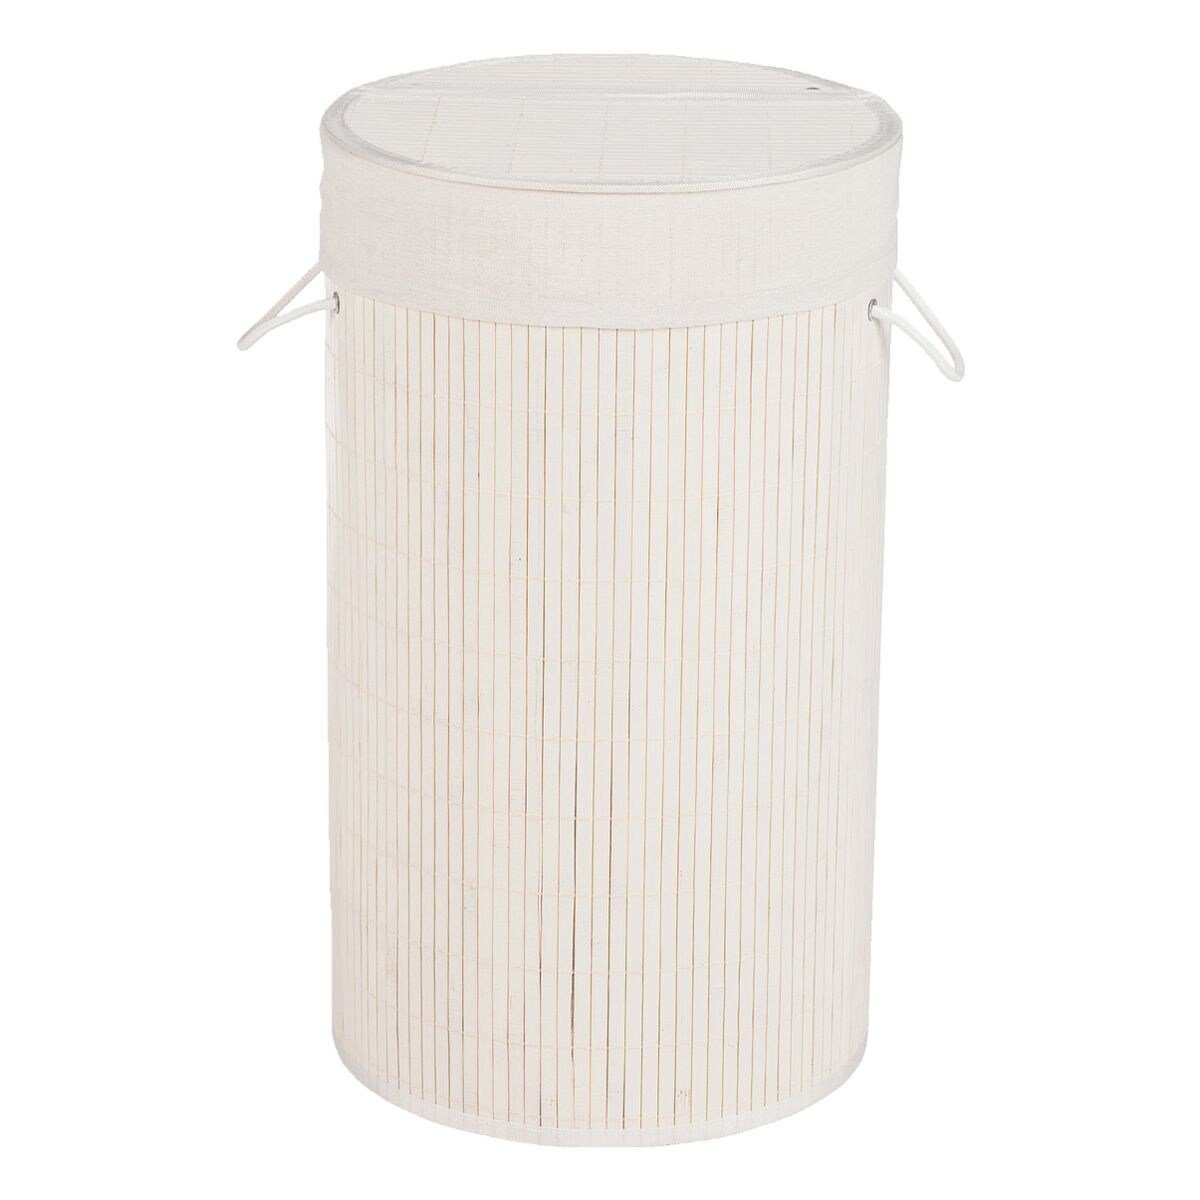 55 weiß Liter, Deckel Bamboo, mit WENKO Wäschekorb